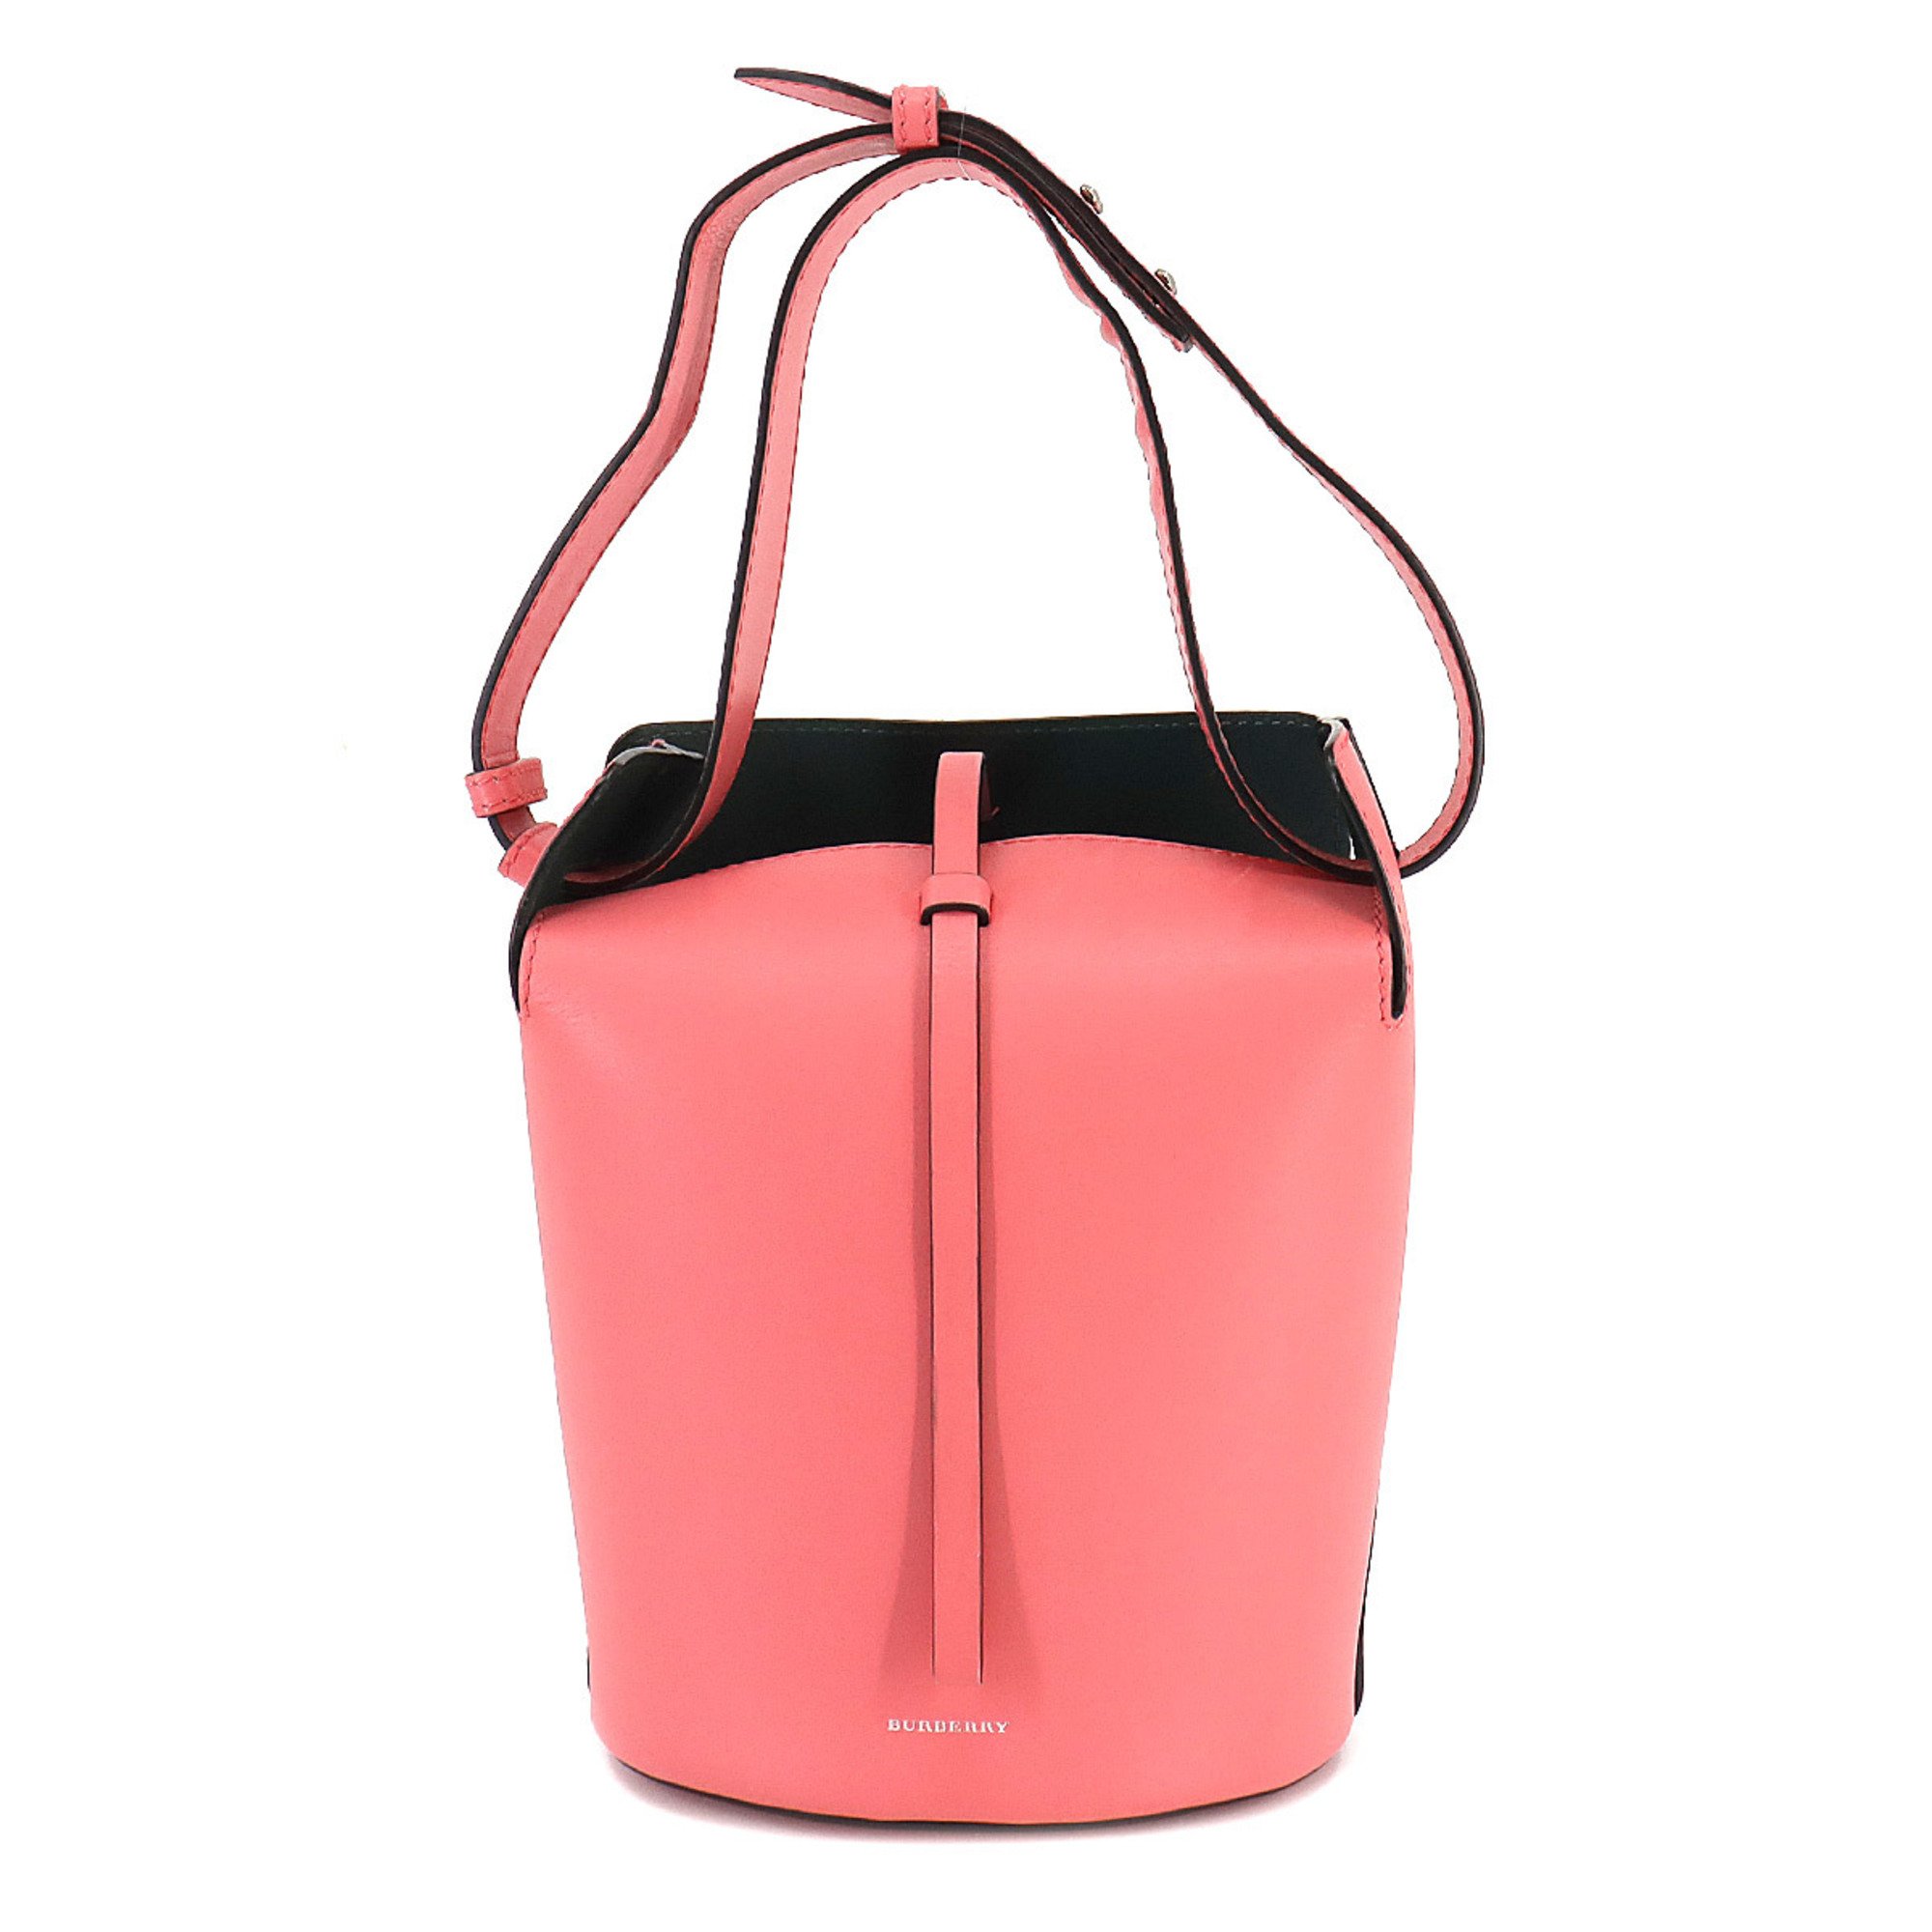 Burberry BURBERRY shoulder bag leather pink silver metal fittings Shoulder Bag